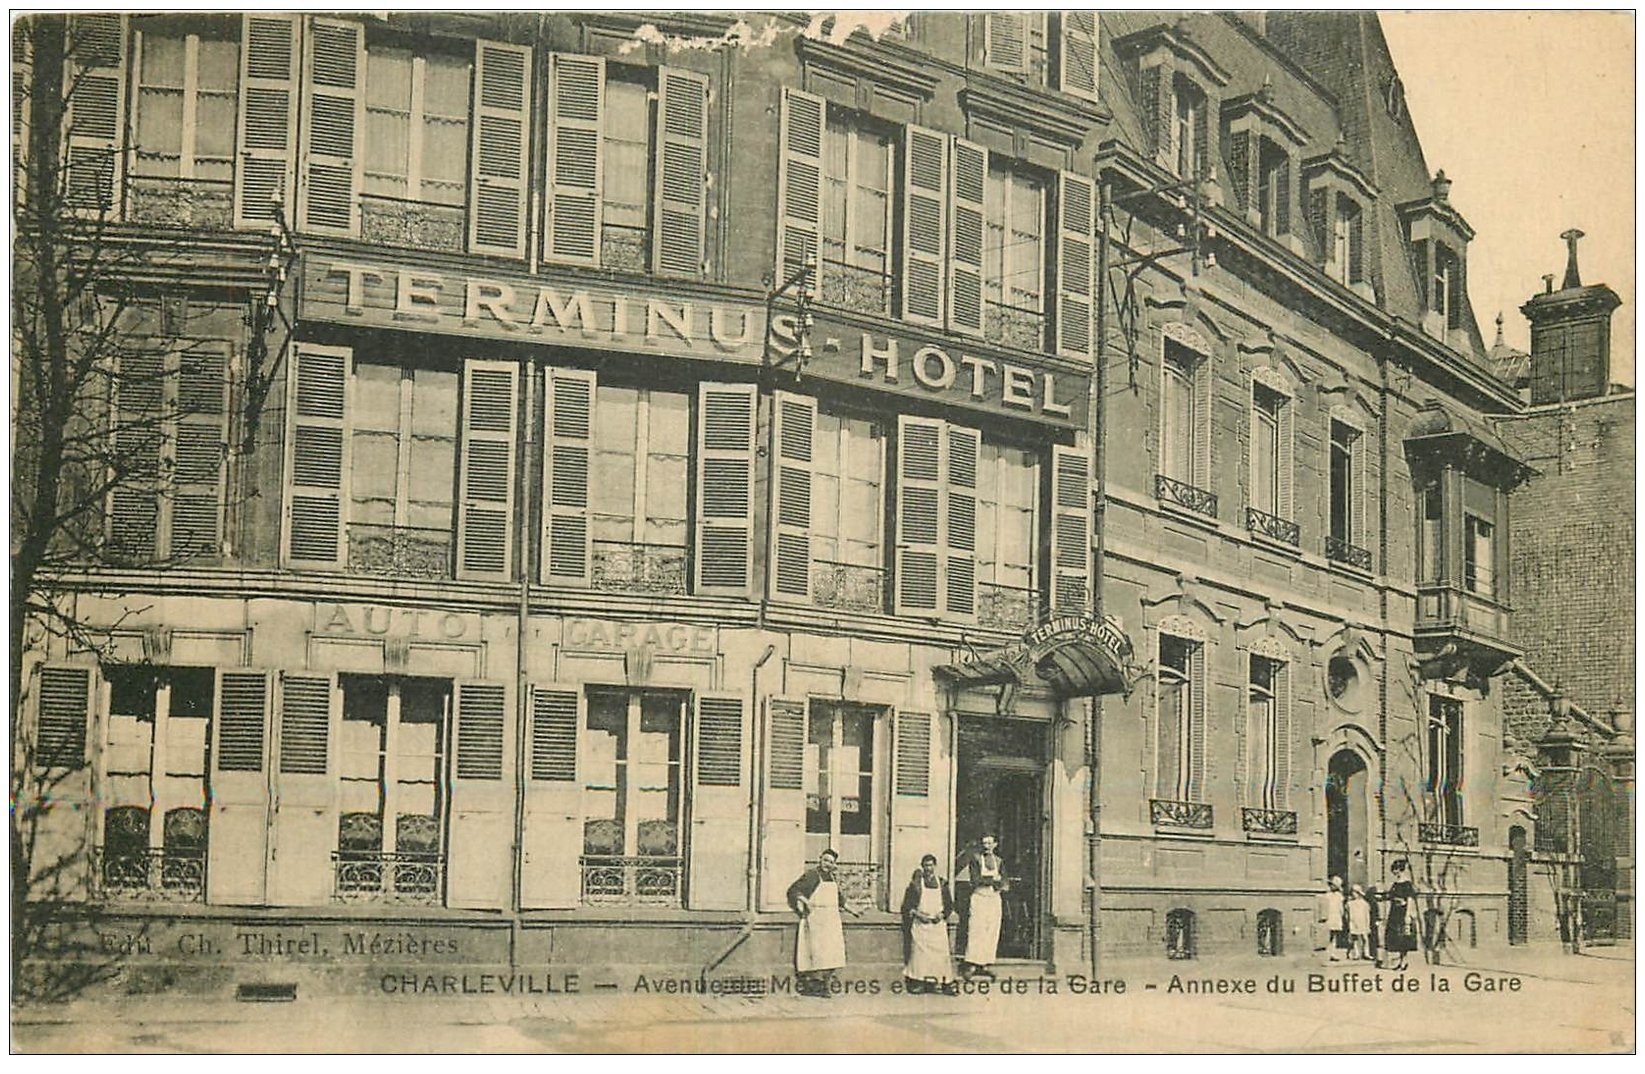 carte postale ancienne 08 CHARLEVILLE. Terminus Hôtel Avenue Mézières Place de la Gare. Buffet de la Gare